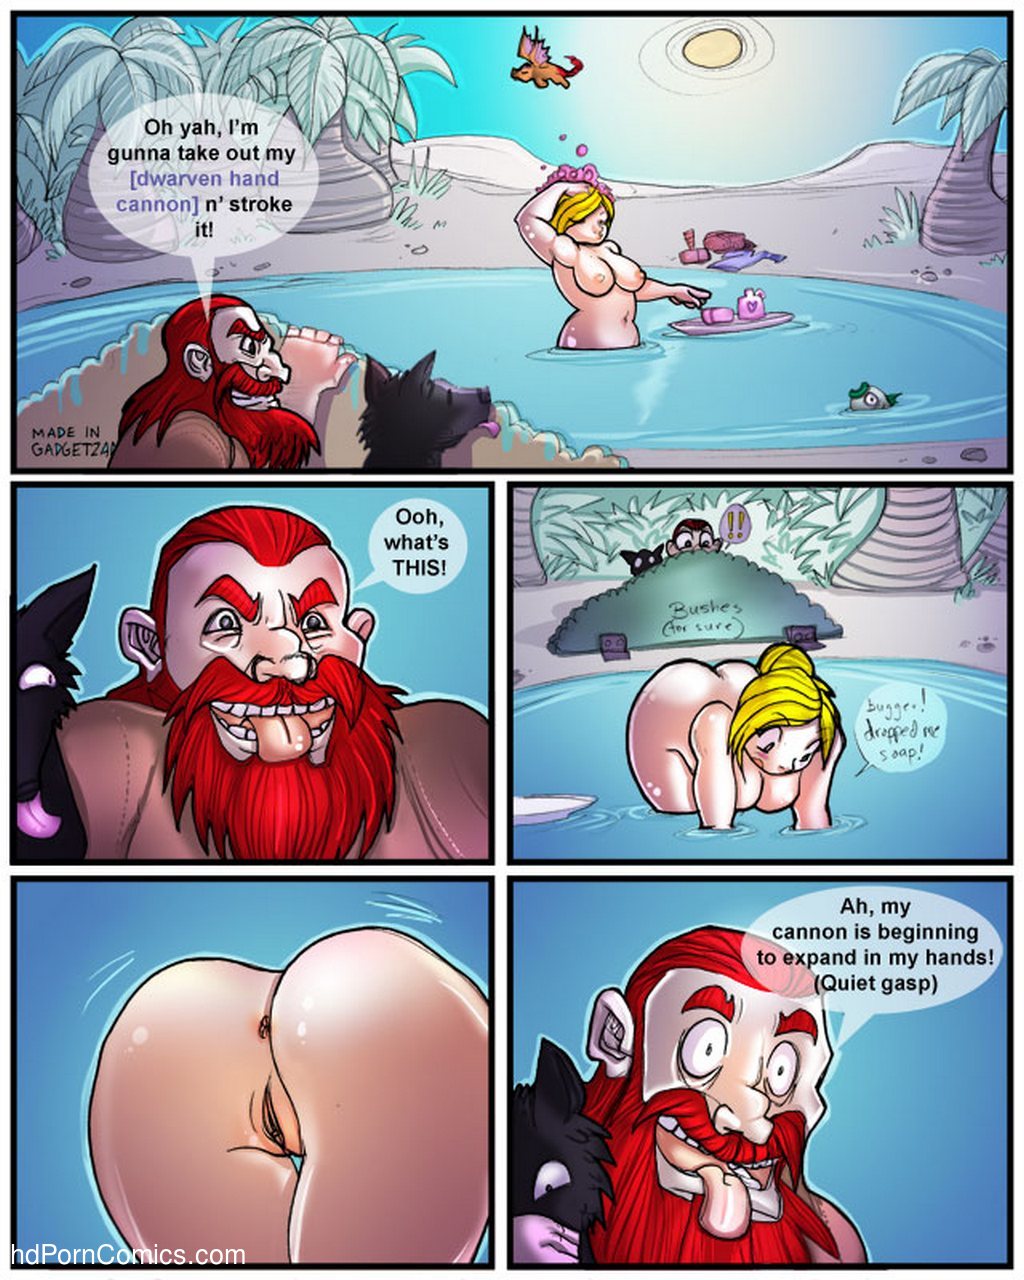 1024px x 1280px - Dwarf vs Dwarf Sex Comic - HD Porn Comics